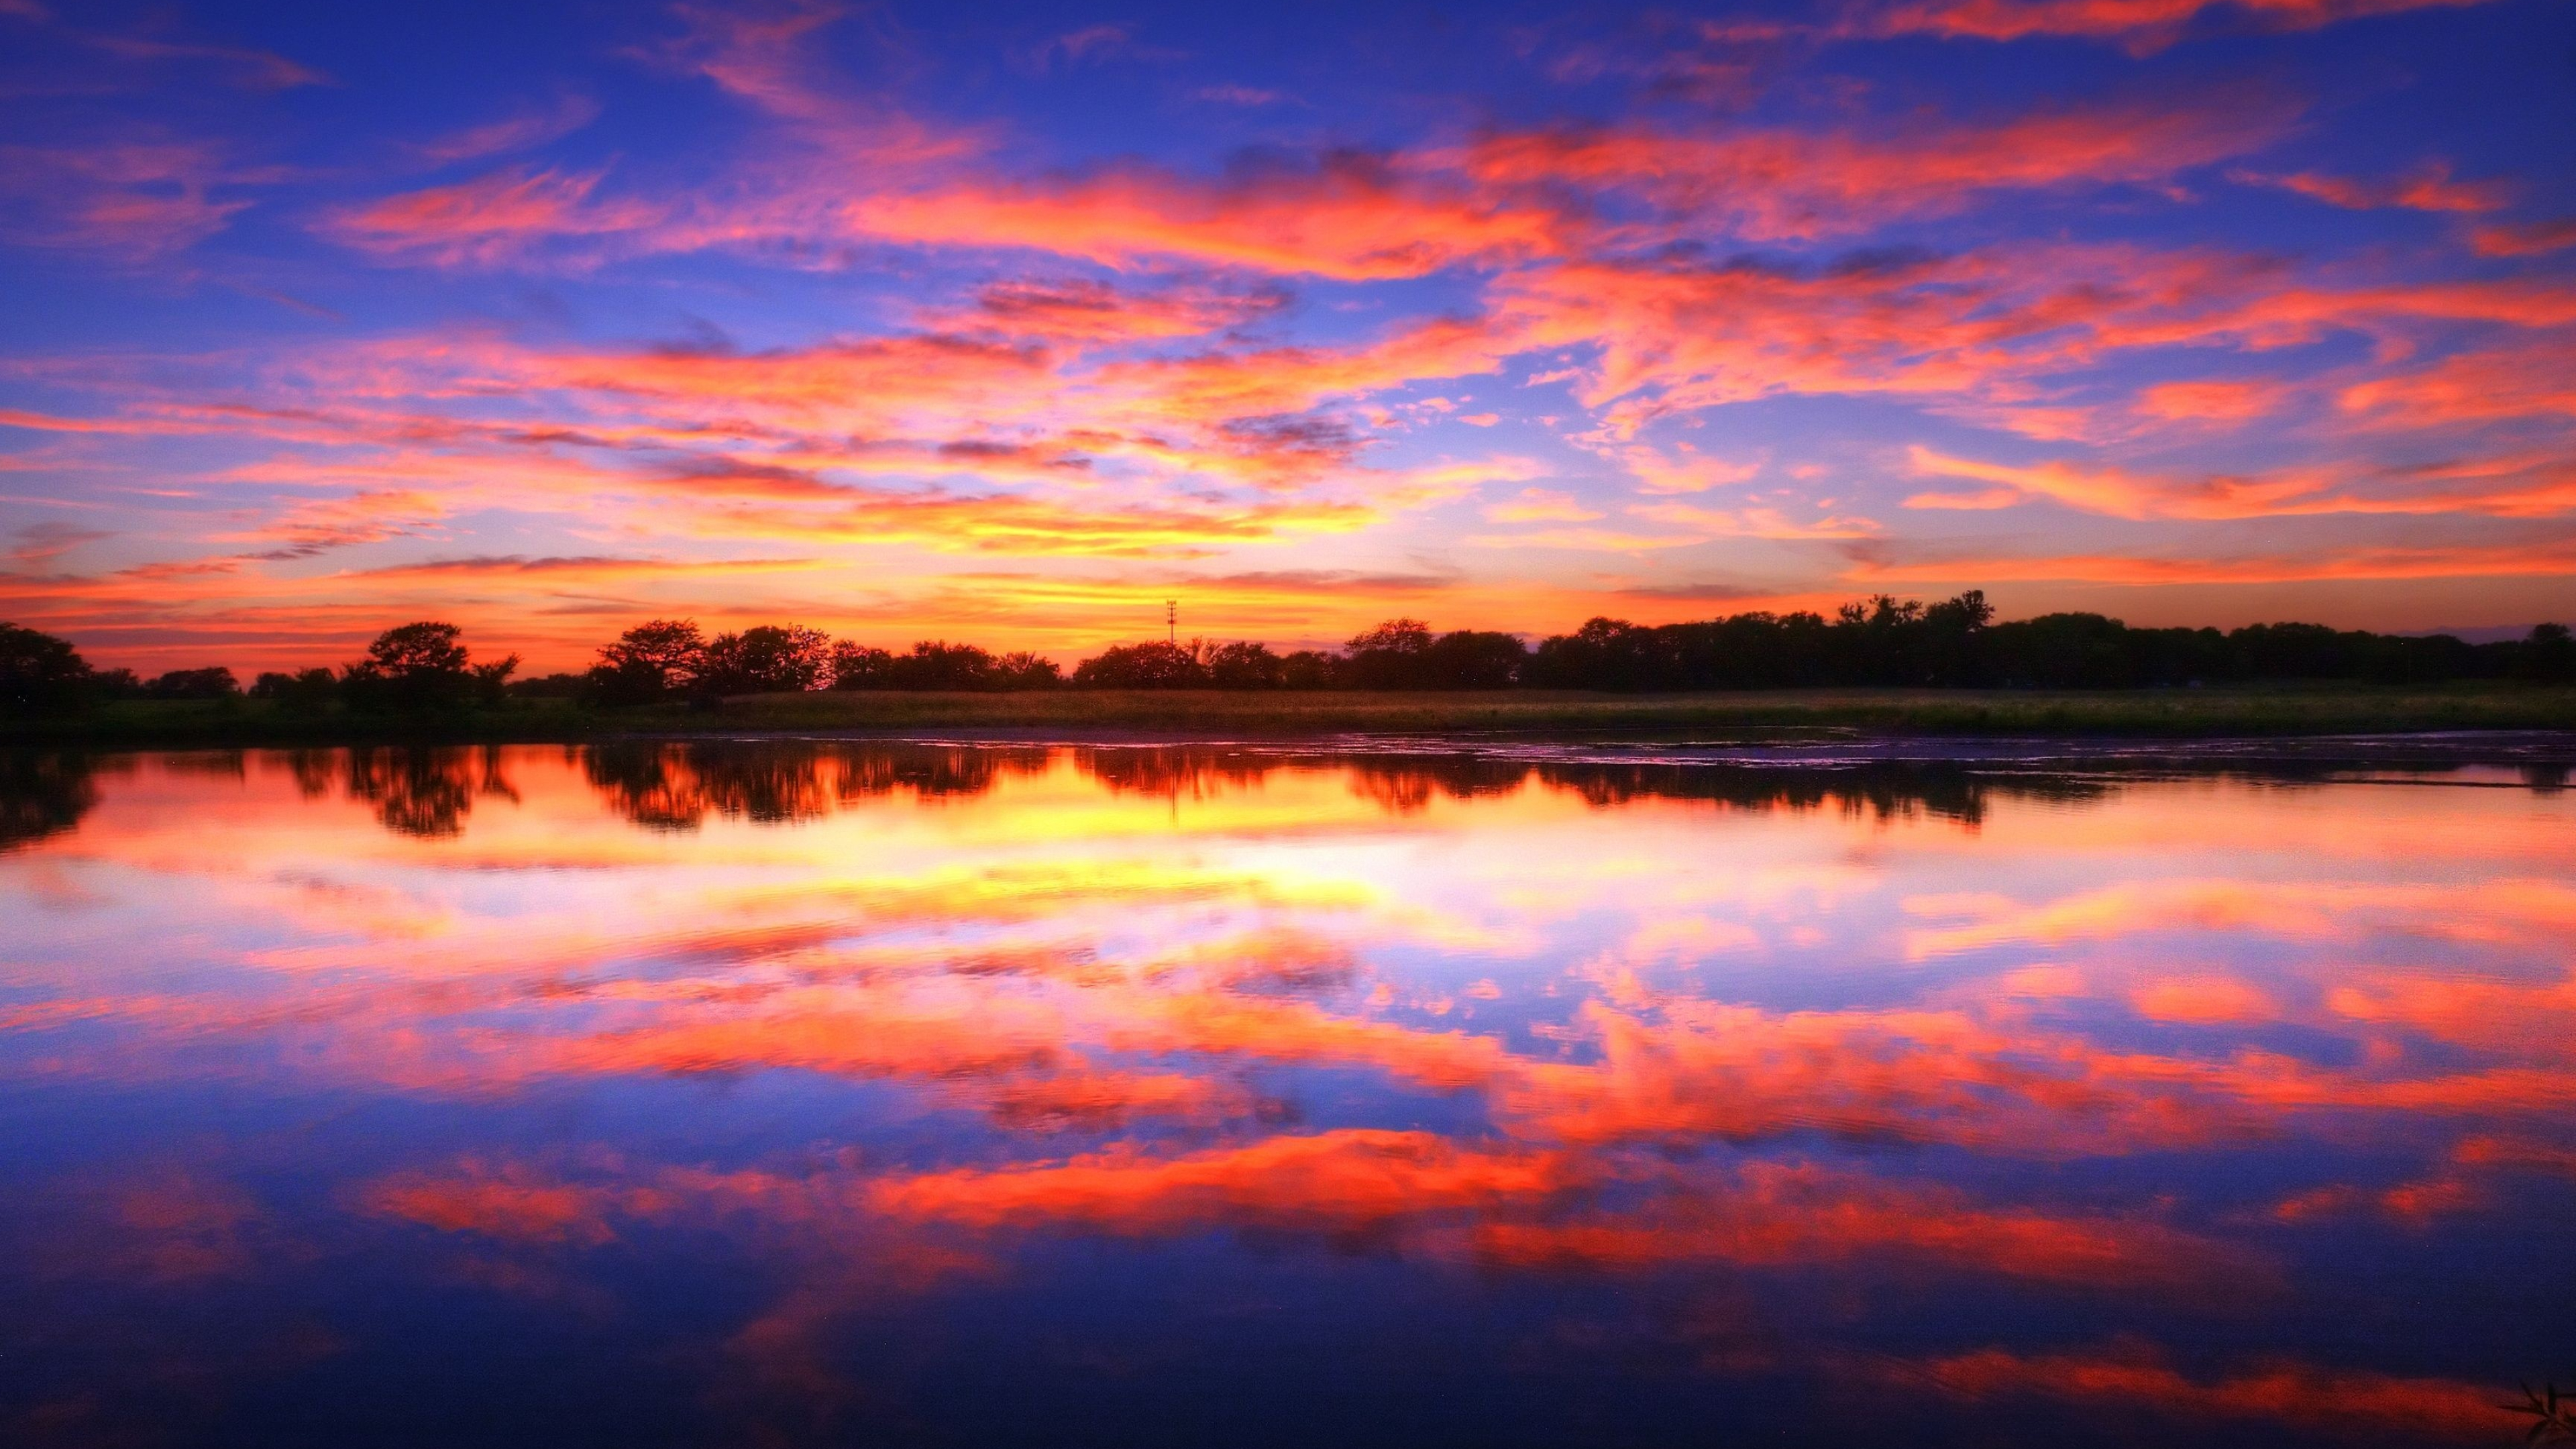 Manitoba Lake, Panoramic sunset views, Wallpaper-worthy, Tranquil landscapes, 3840x2160 4K Desktop